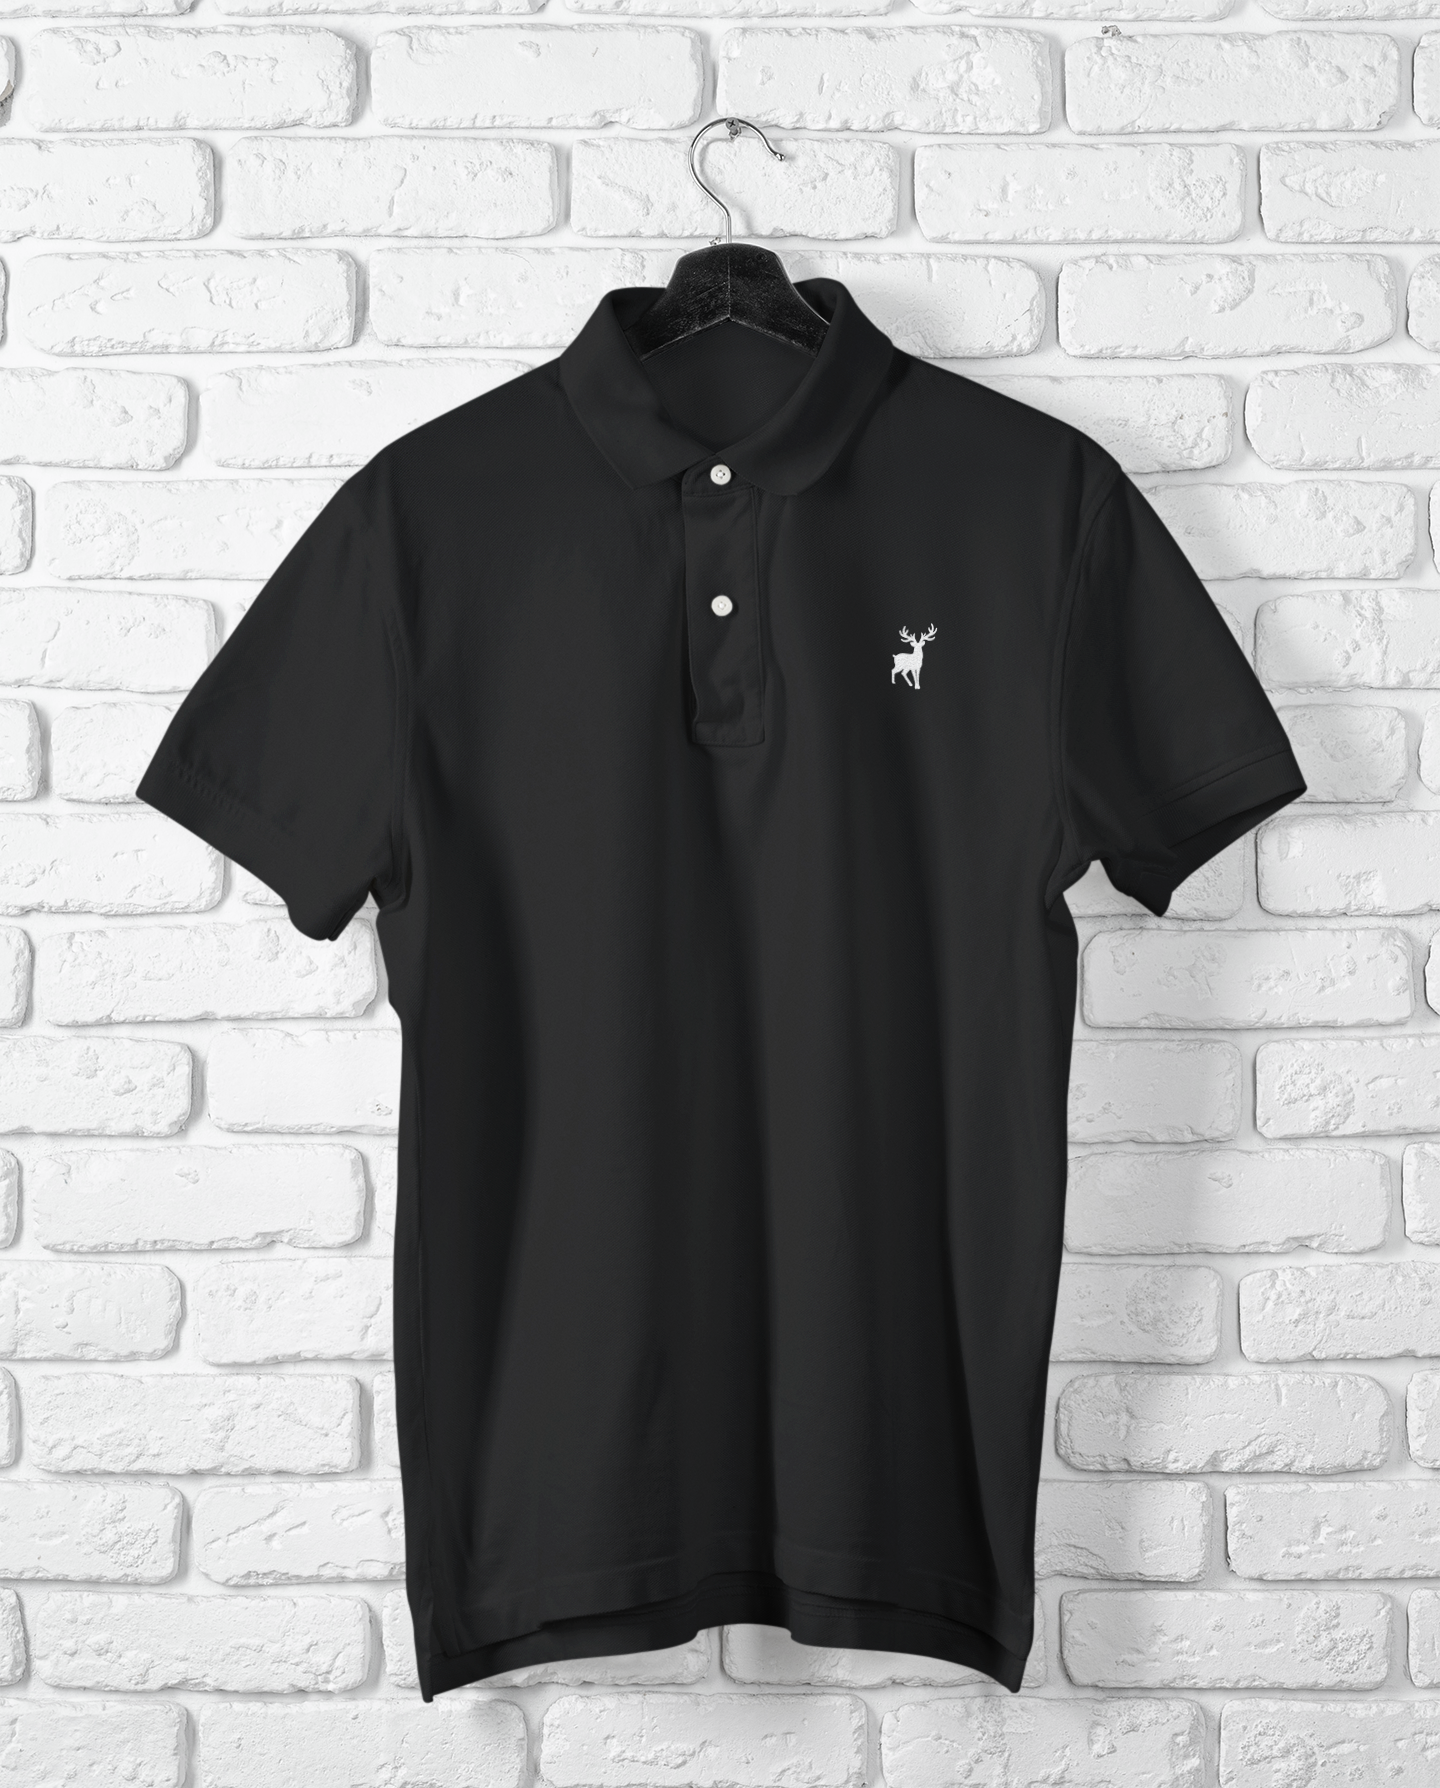 Classic ATOM Logo Black Polo Neck T-Shirt For Men